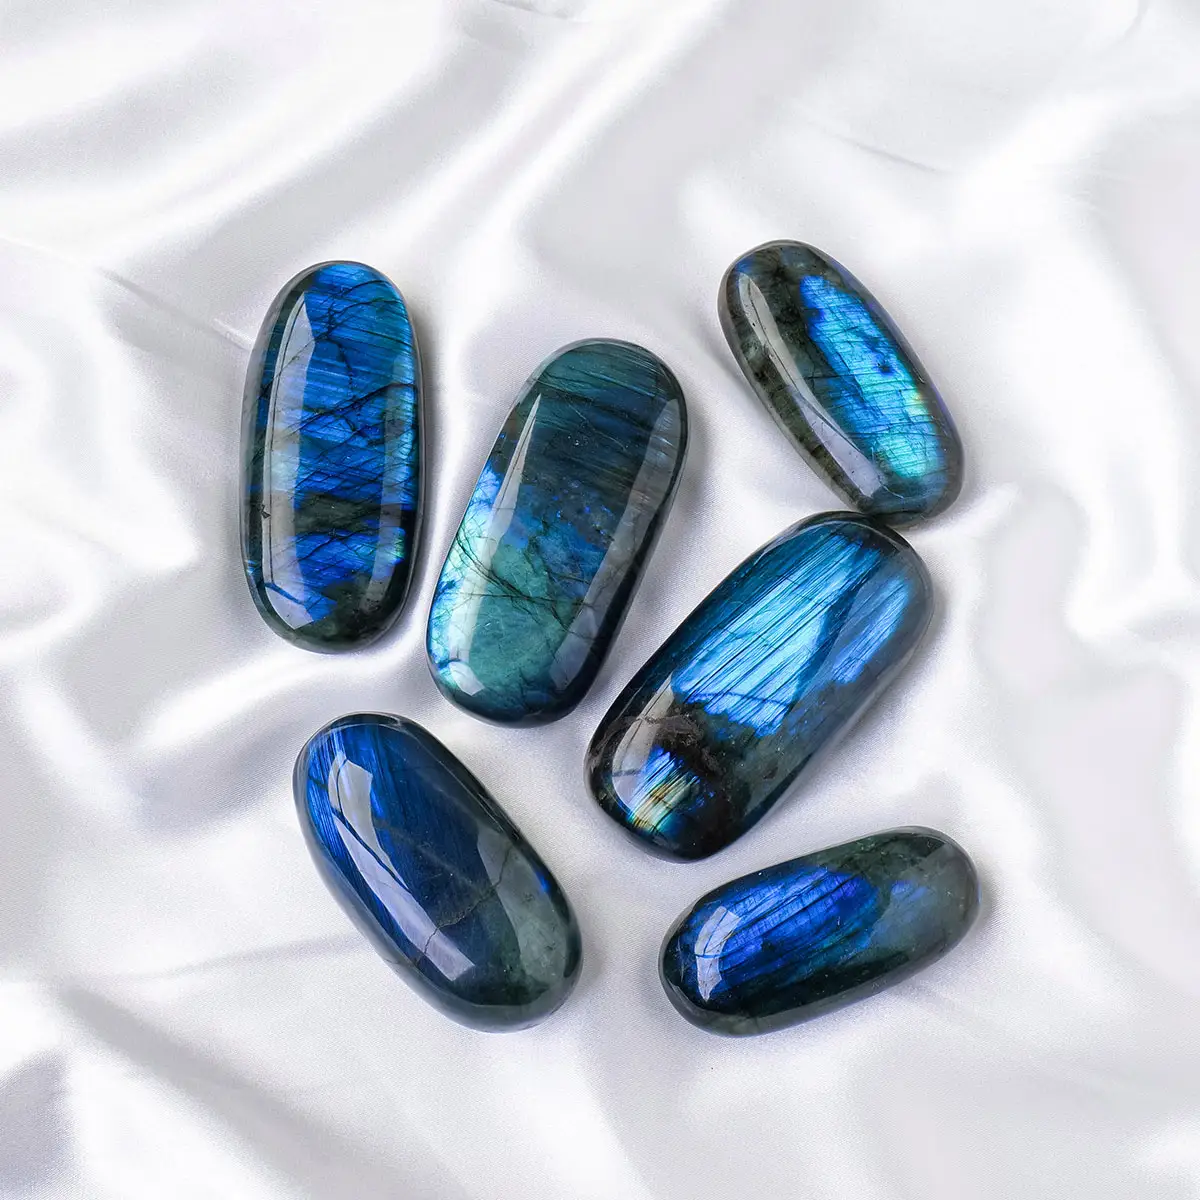 Venta al por mayor de artesanías de cristal natural tallada a mano azul Flash luz labradorita Palma para Decoración